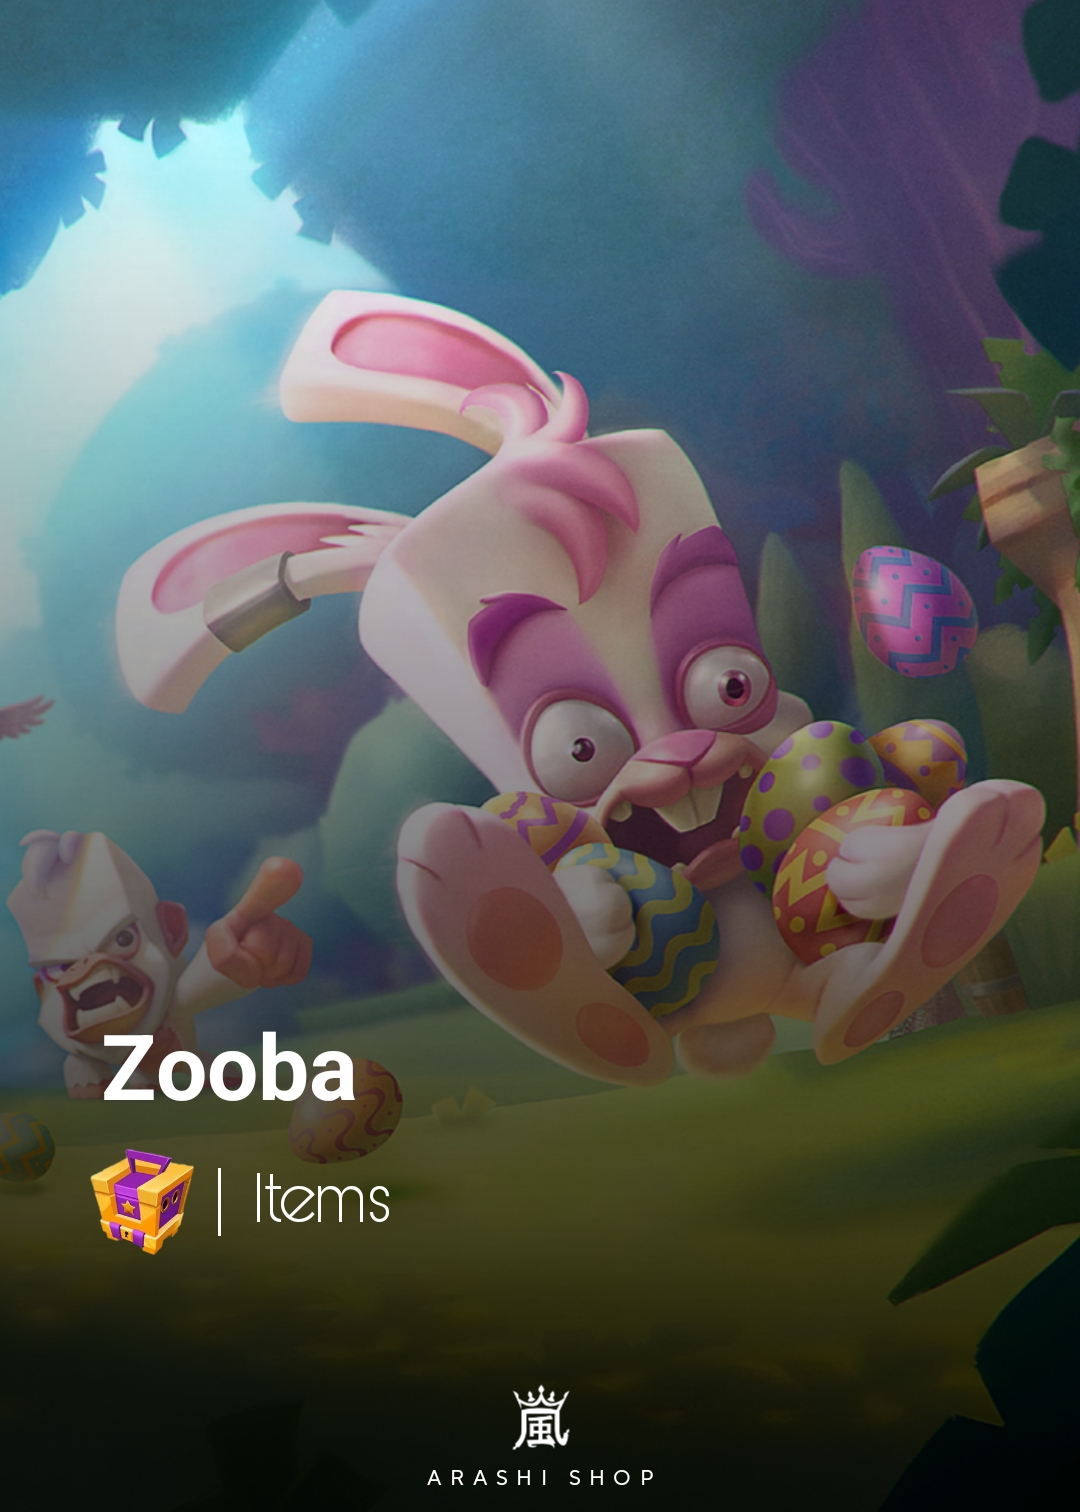 آیتم های زوبا items zooba